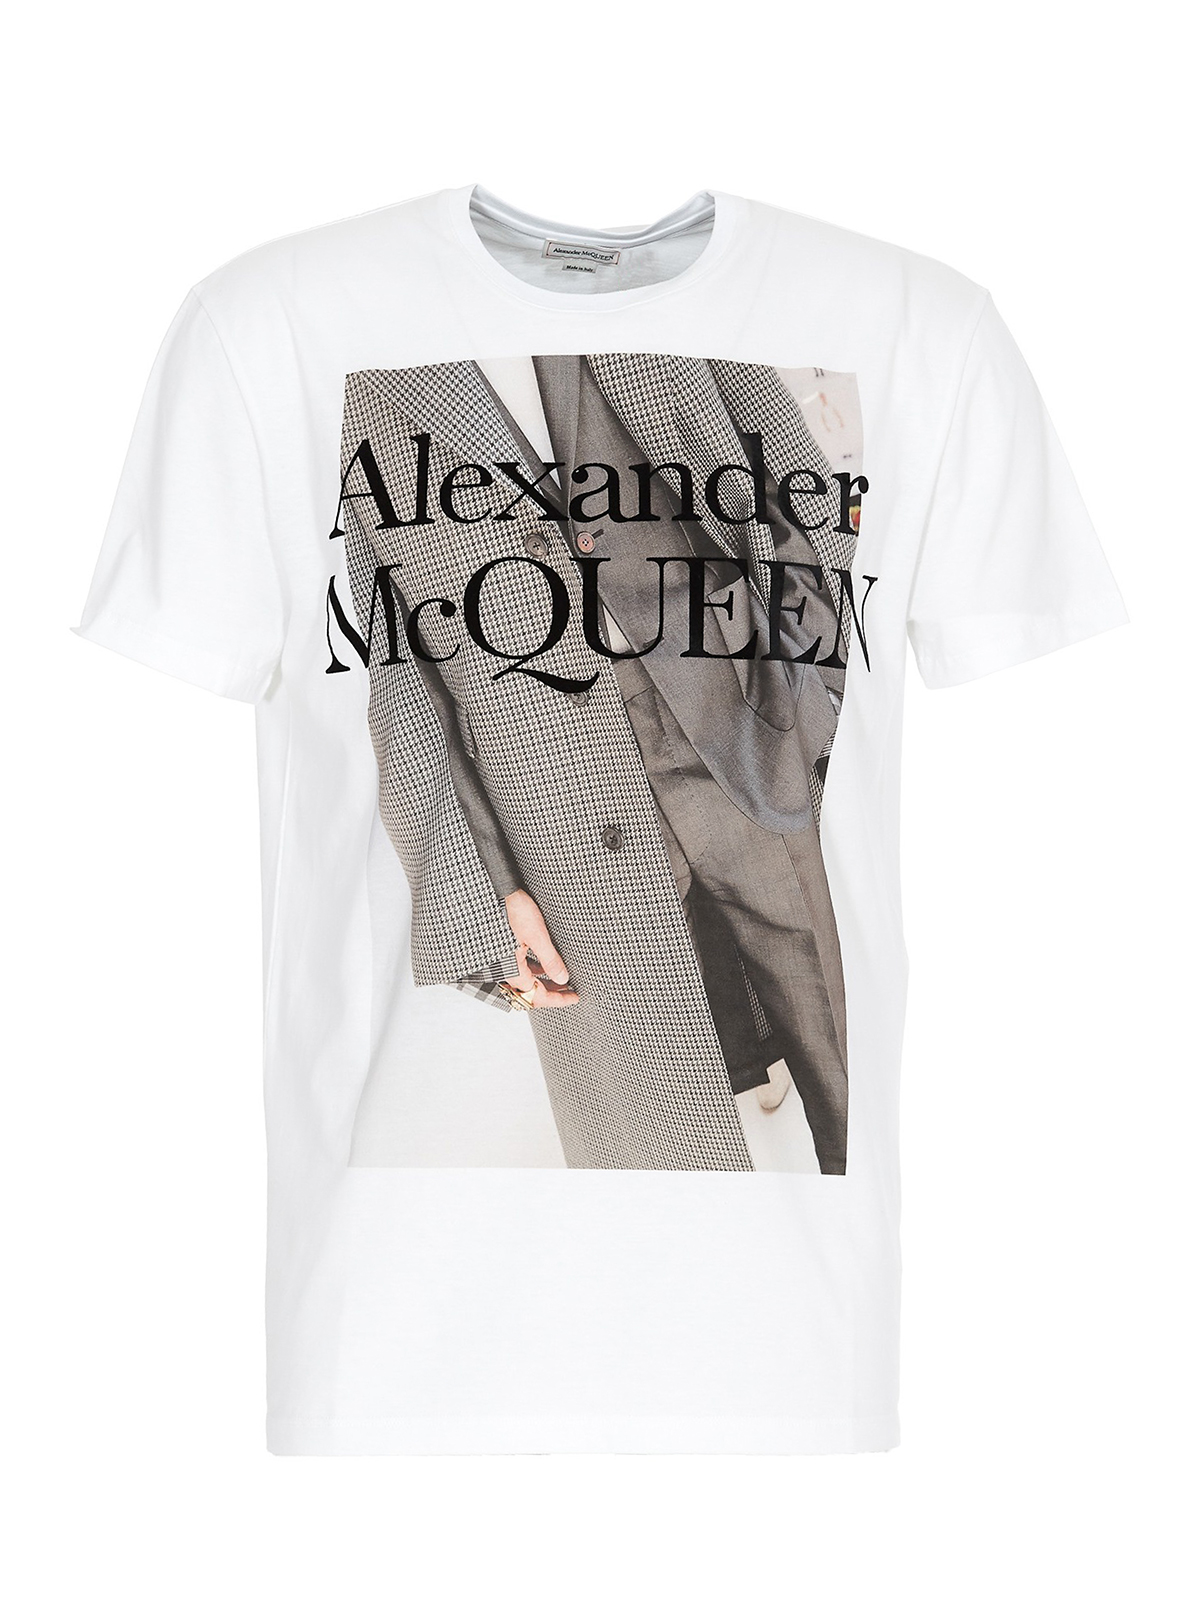 Camisetas Alexander Mcqueen Camiseta Blanco - 624171QPZ610900